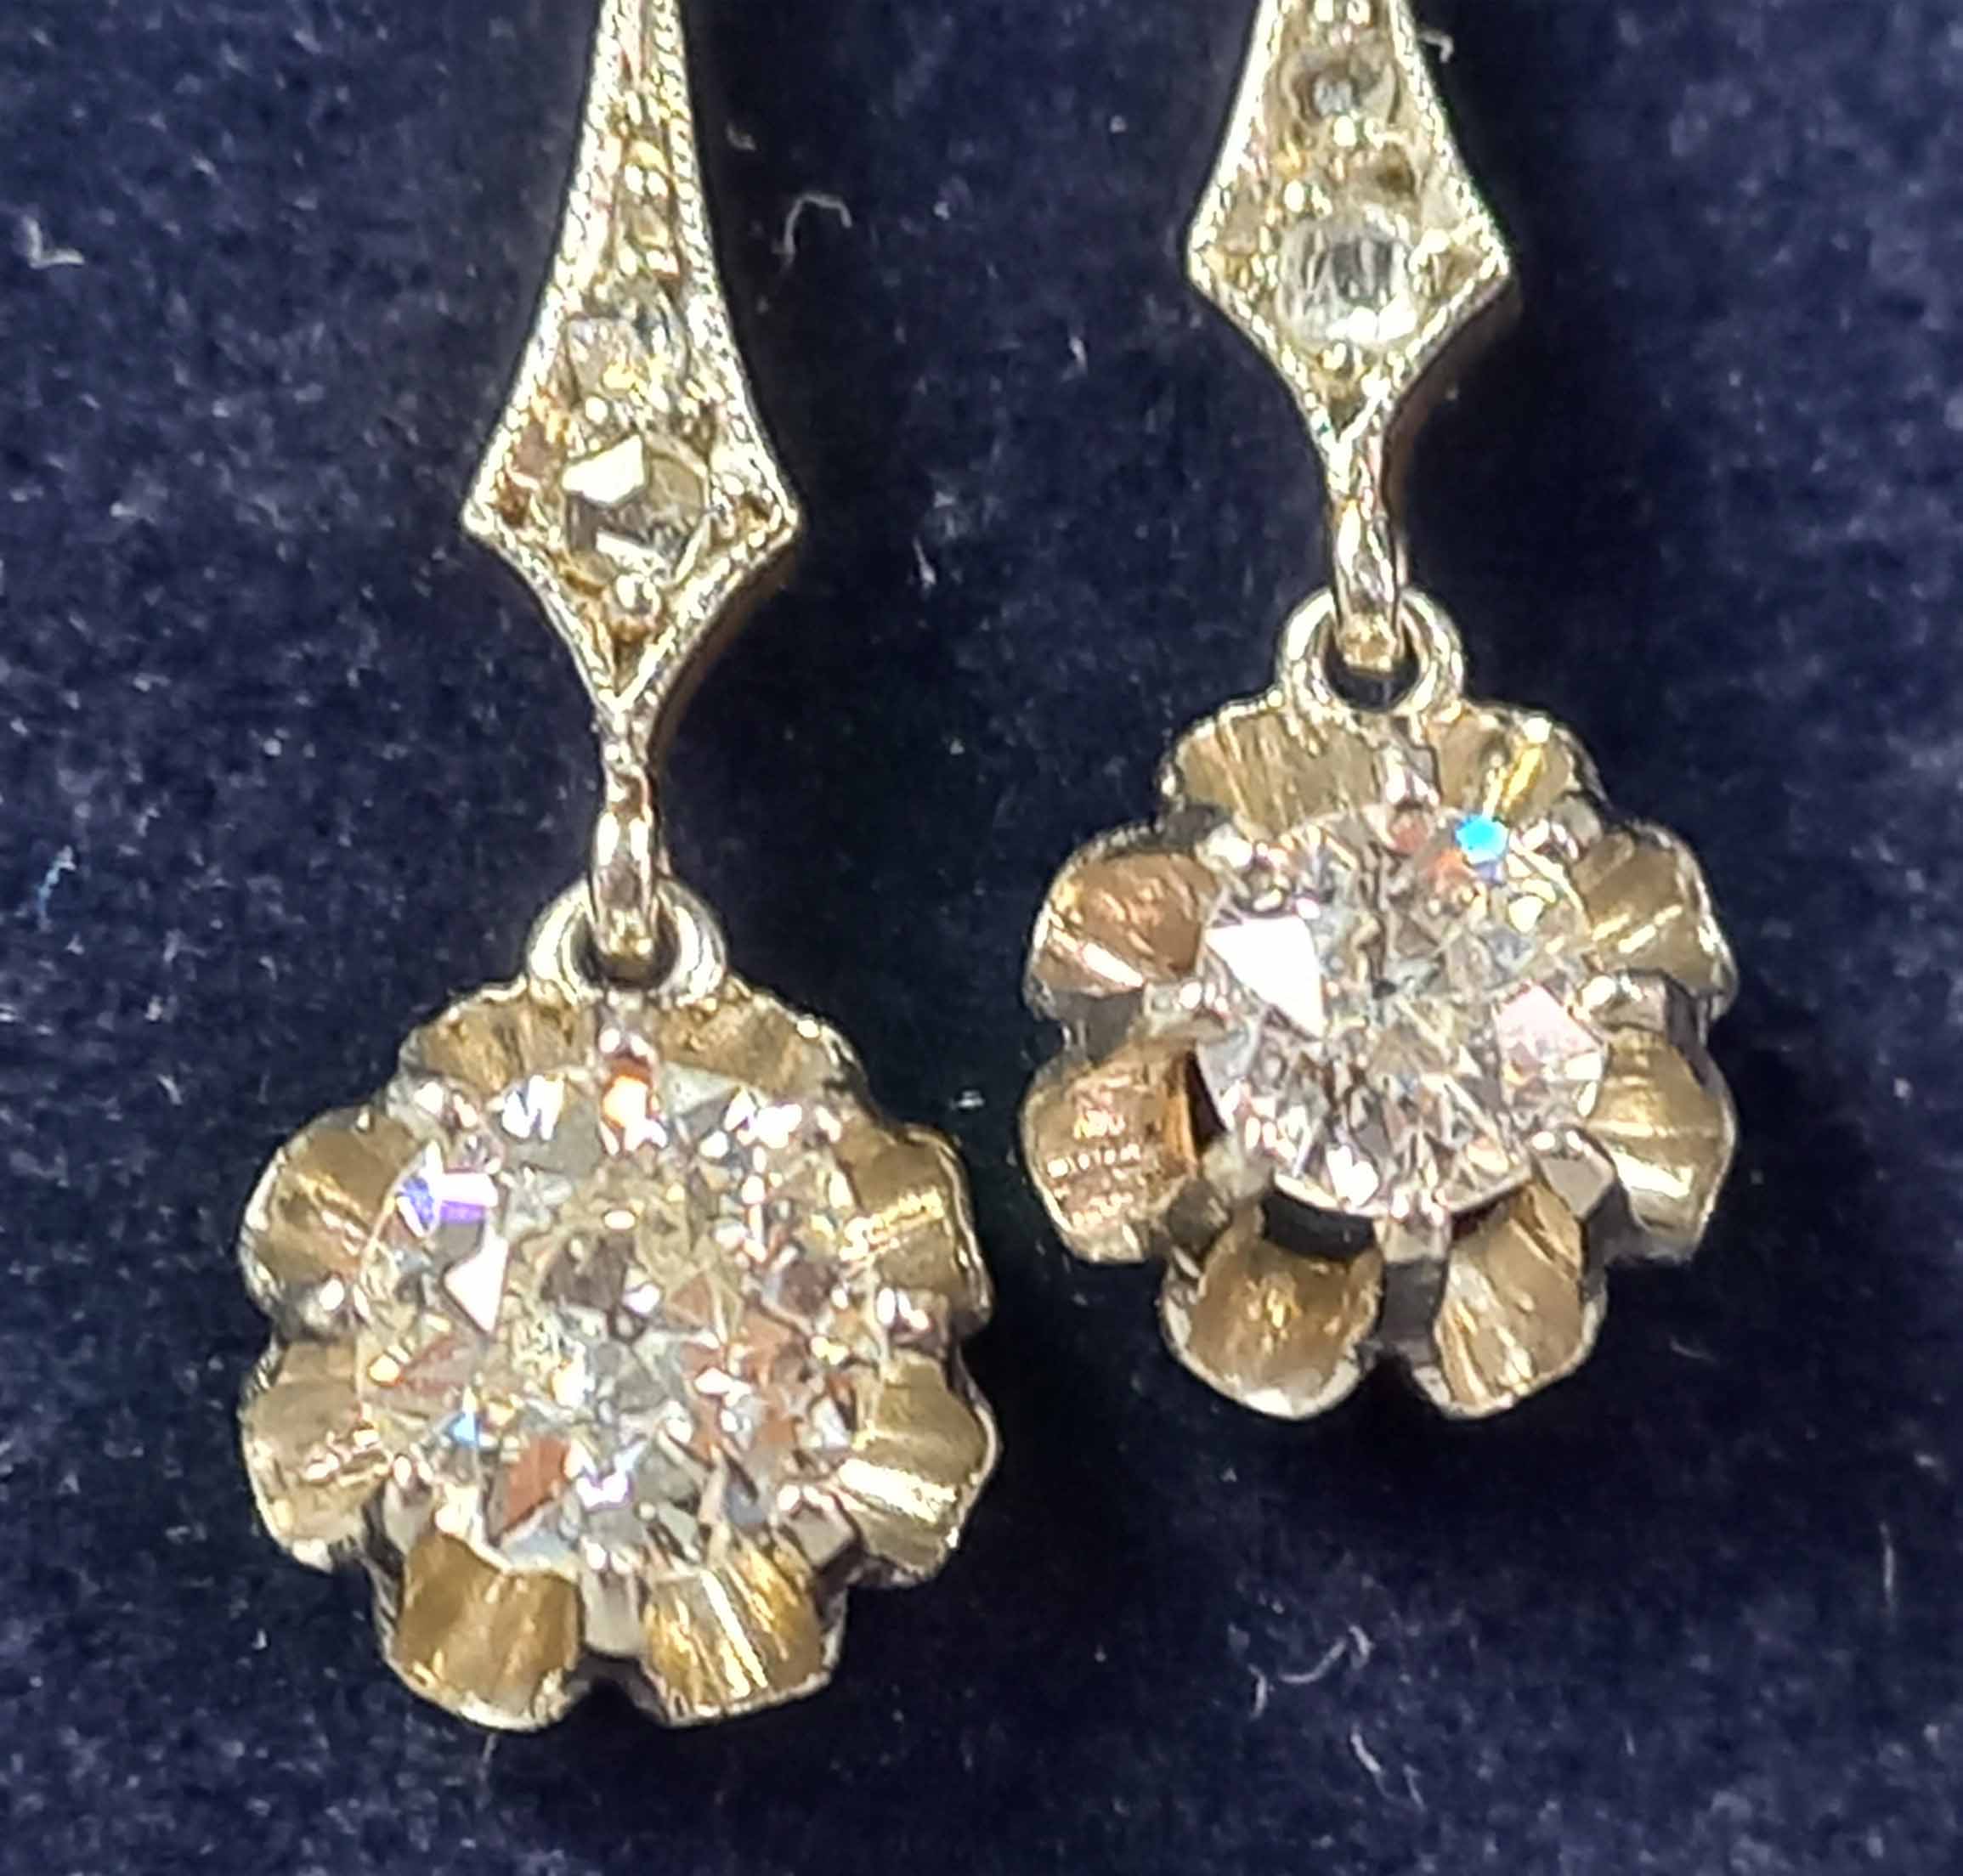 Collier Gold 585 mit Diamant circa 0,5 Karat und Diamant 0,22 Karat. - Image 8 of 13